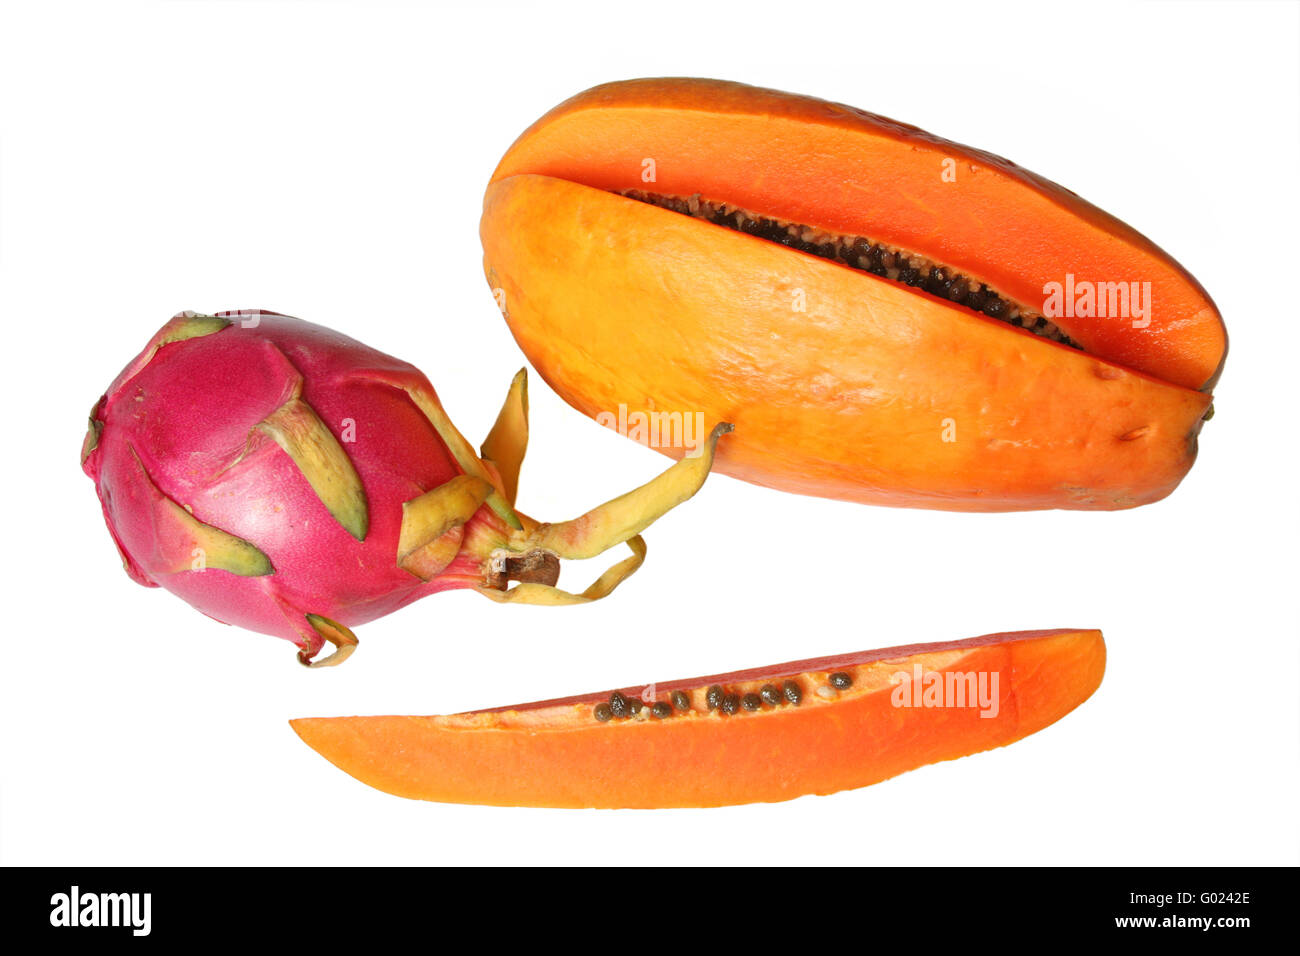 Frutas tropicales - dragon fruit (Rojo o pitahaya Hylocereus undatus) y papaya. Aislado en blanco Foto de stock